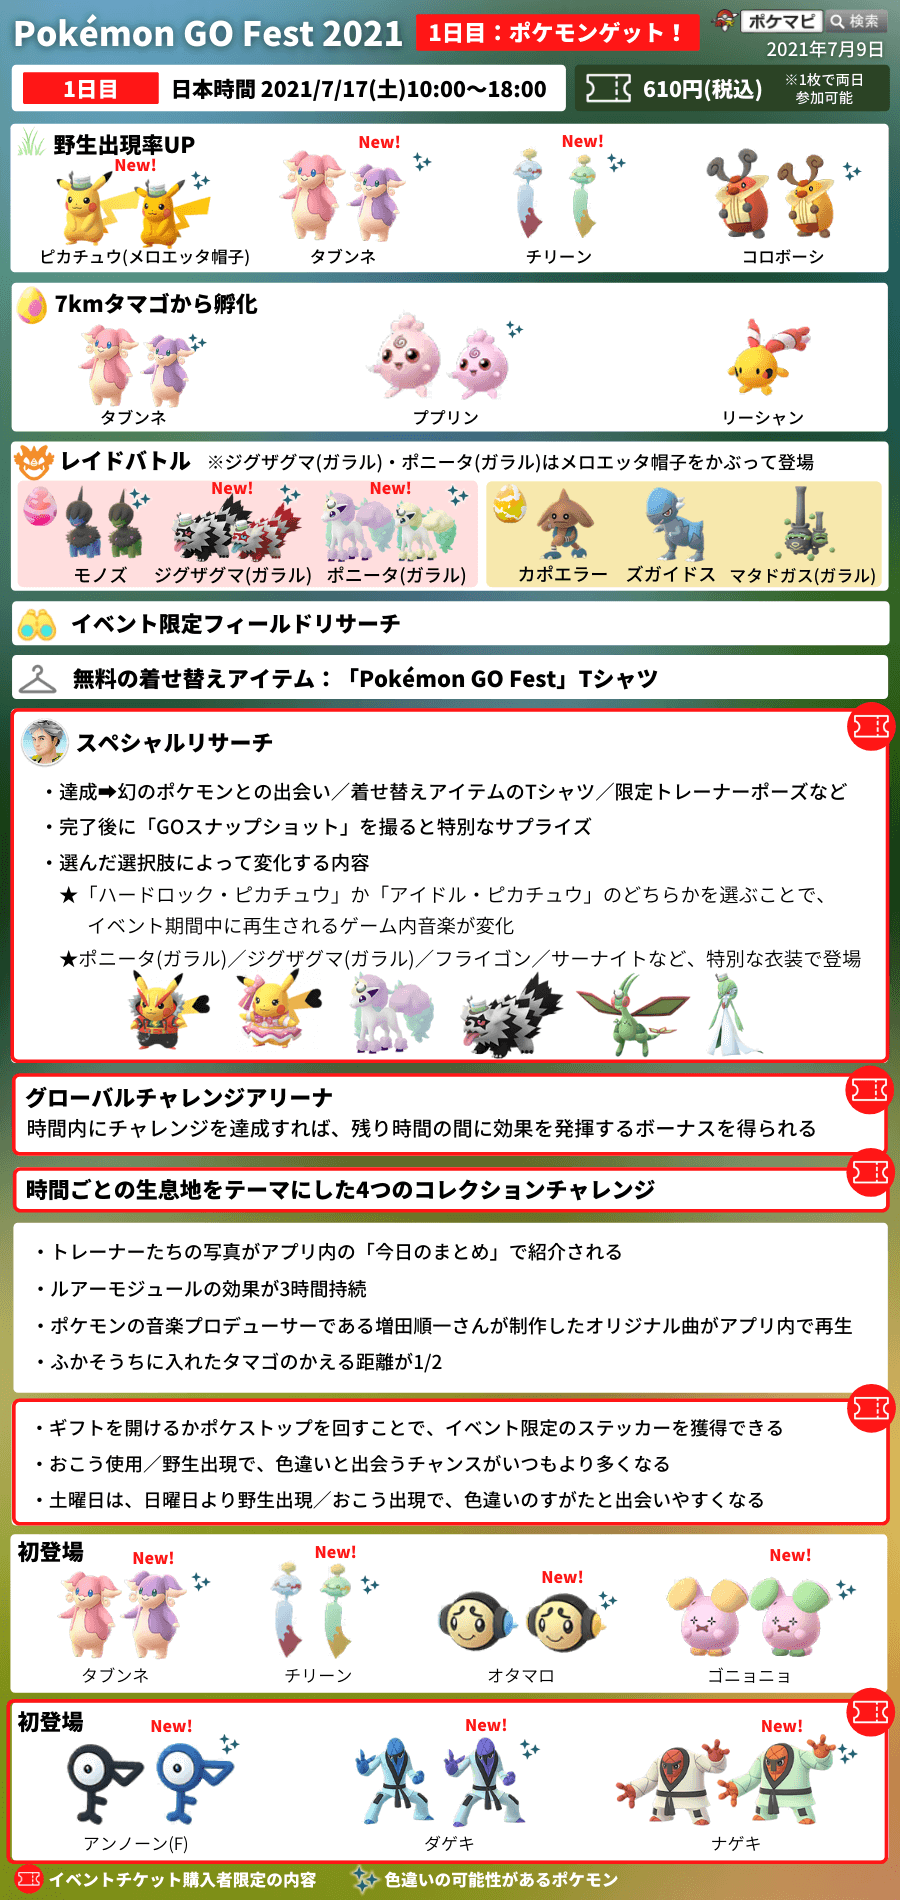 ポケモンgo Pokemon Go Fest 21 ポケモンgoフェスト21 開催 トレーナーが世界中のどこからでも参加できるバーチャル開催